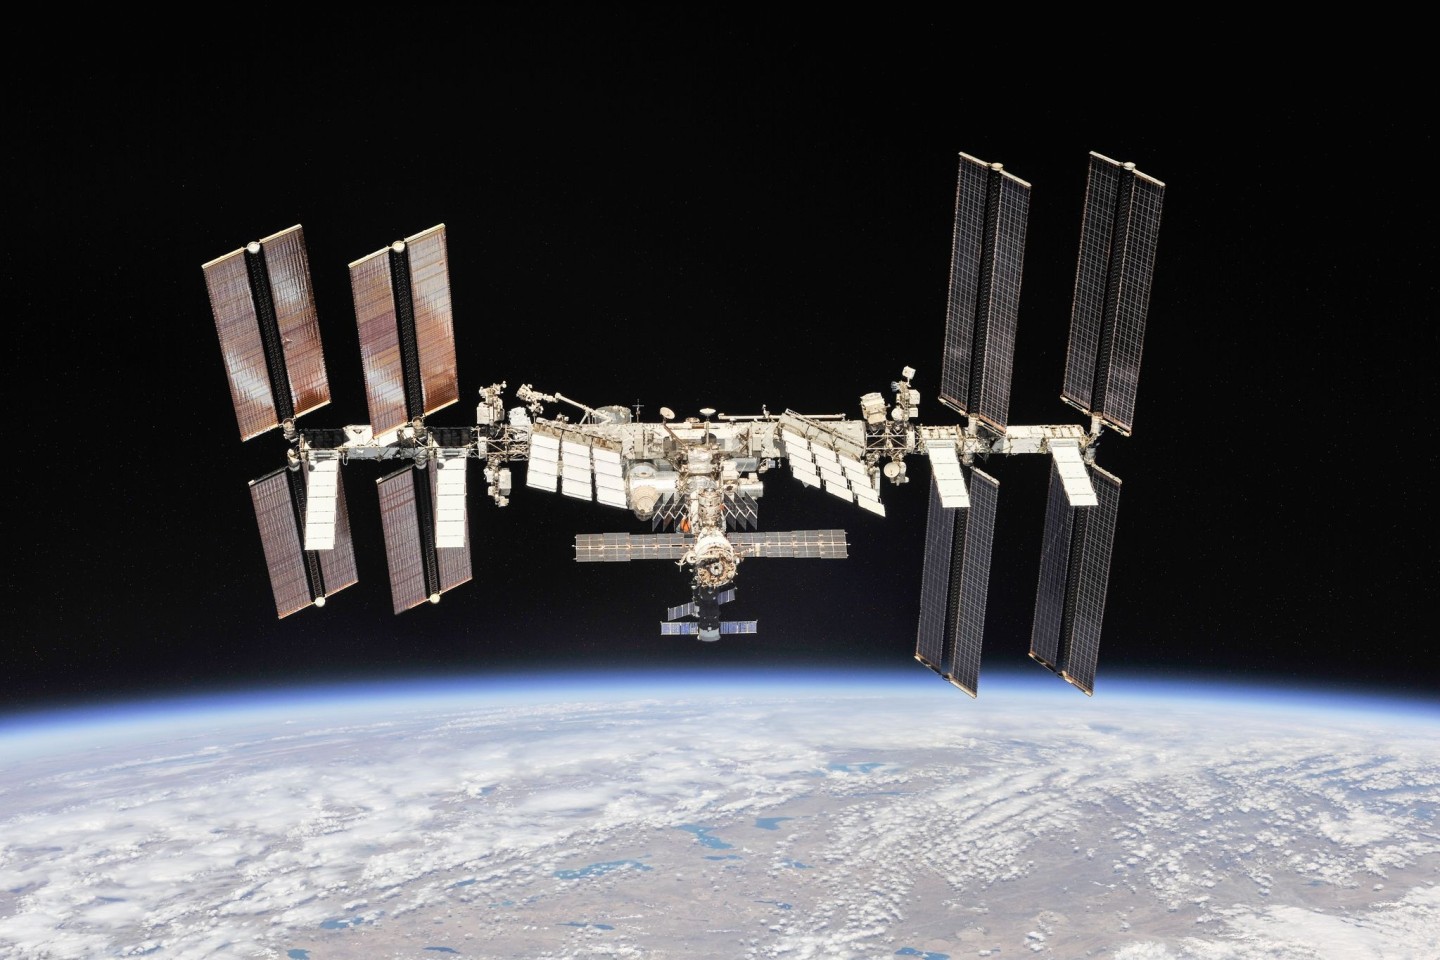 Der Weiterbetrieb der Internationalen Raumstation ISS bis 2030 scheint gesichert.